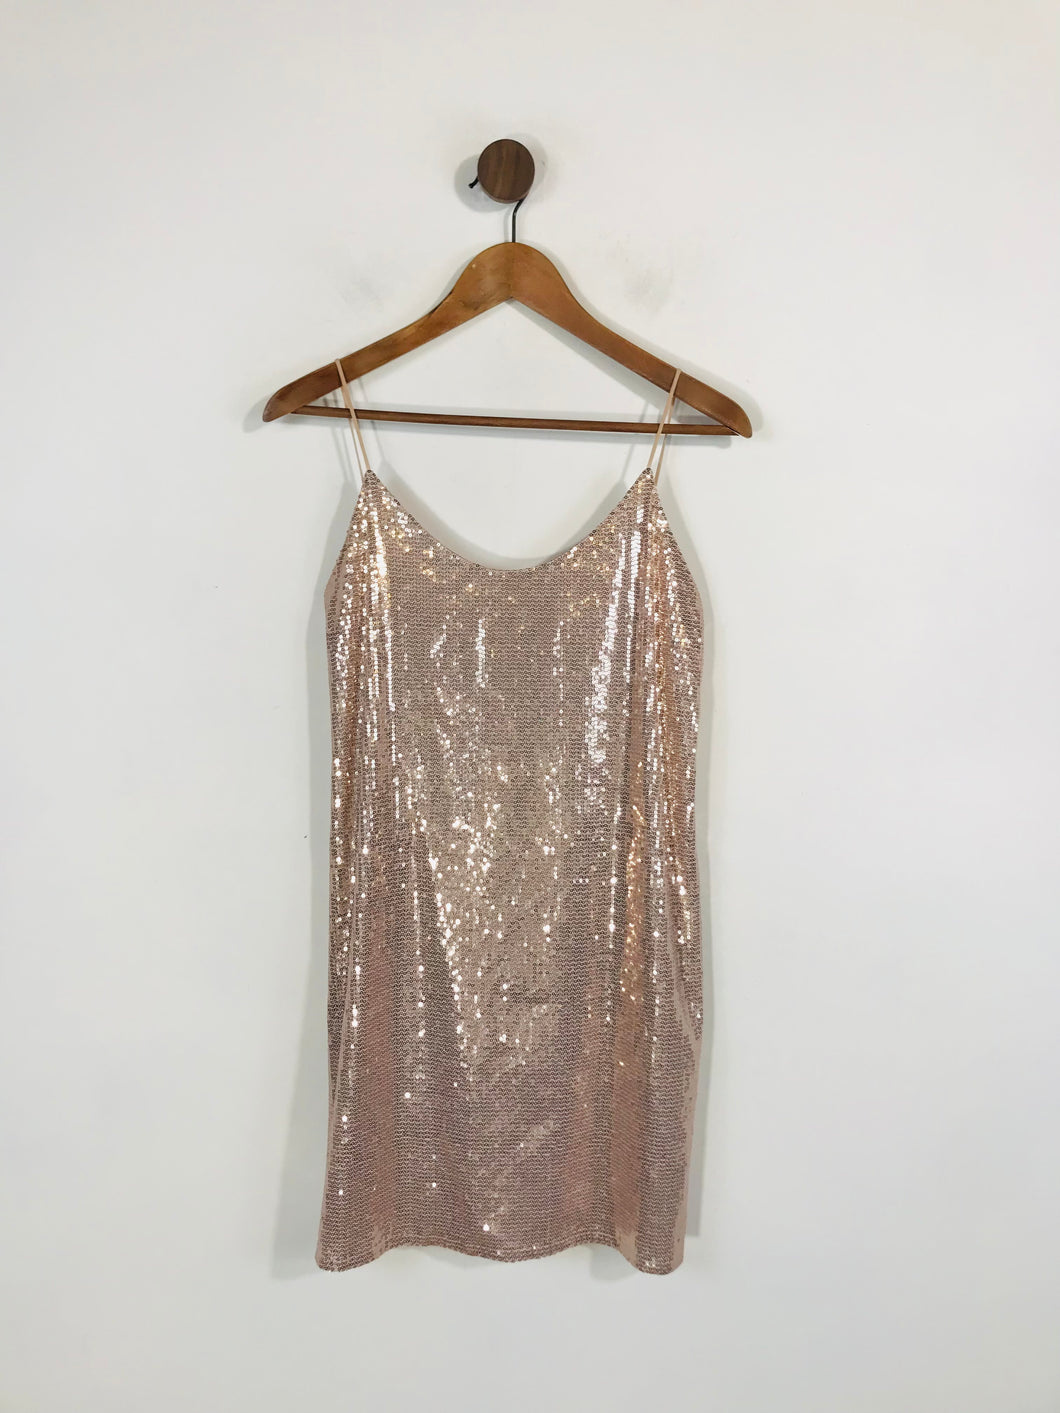 Zara Women's Sequin Tank Top | M UK10-12 | Pink